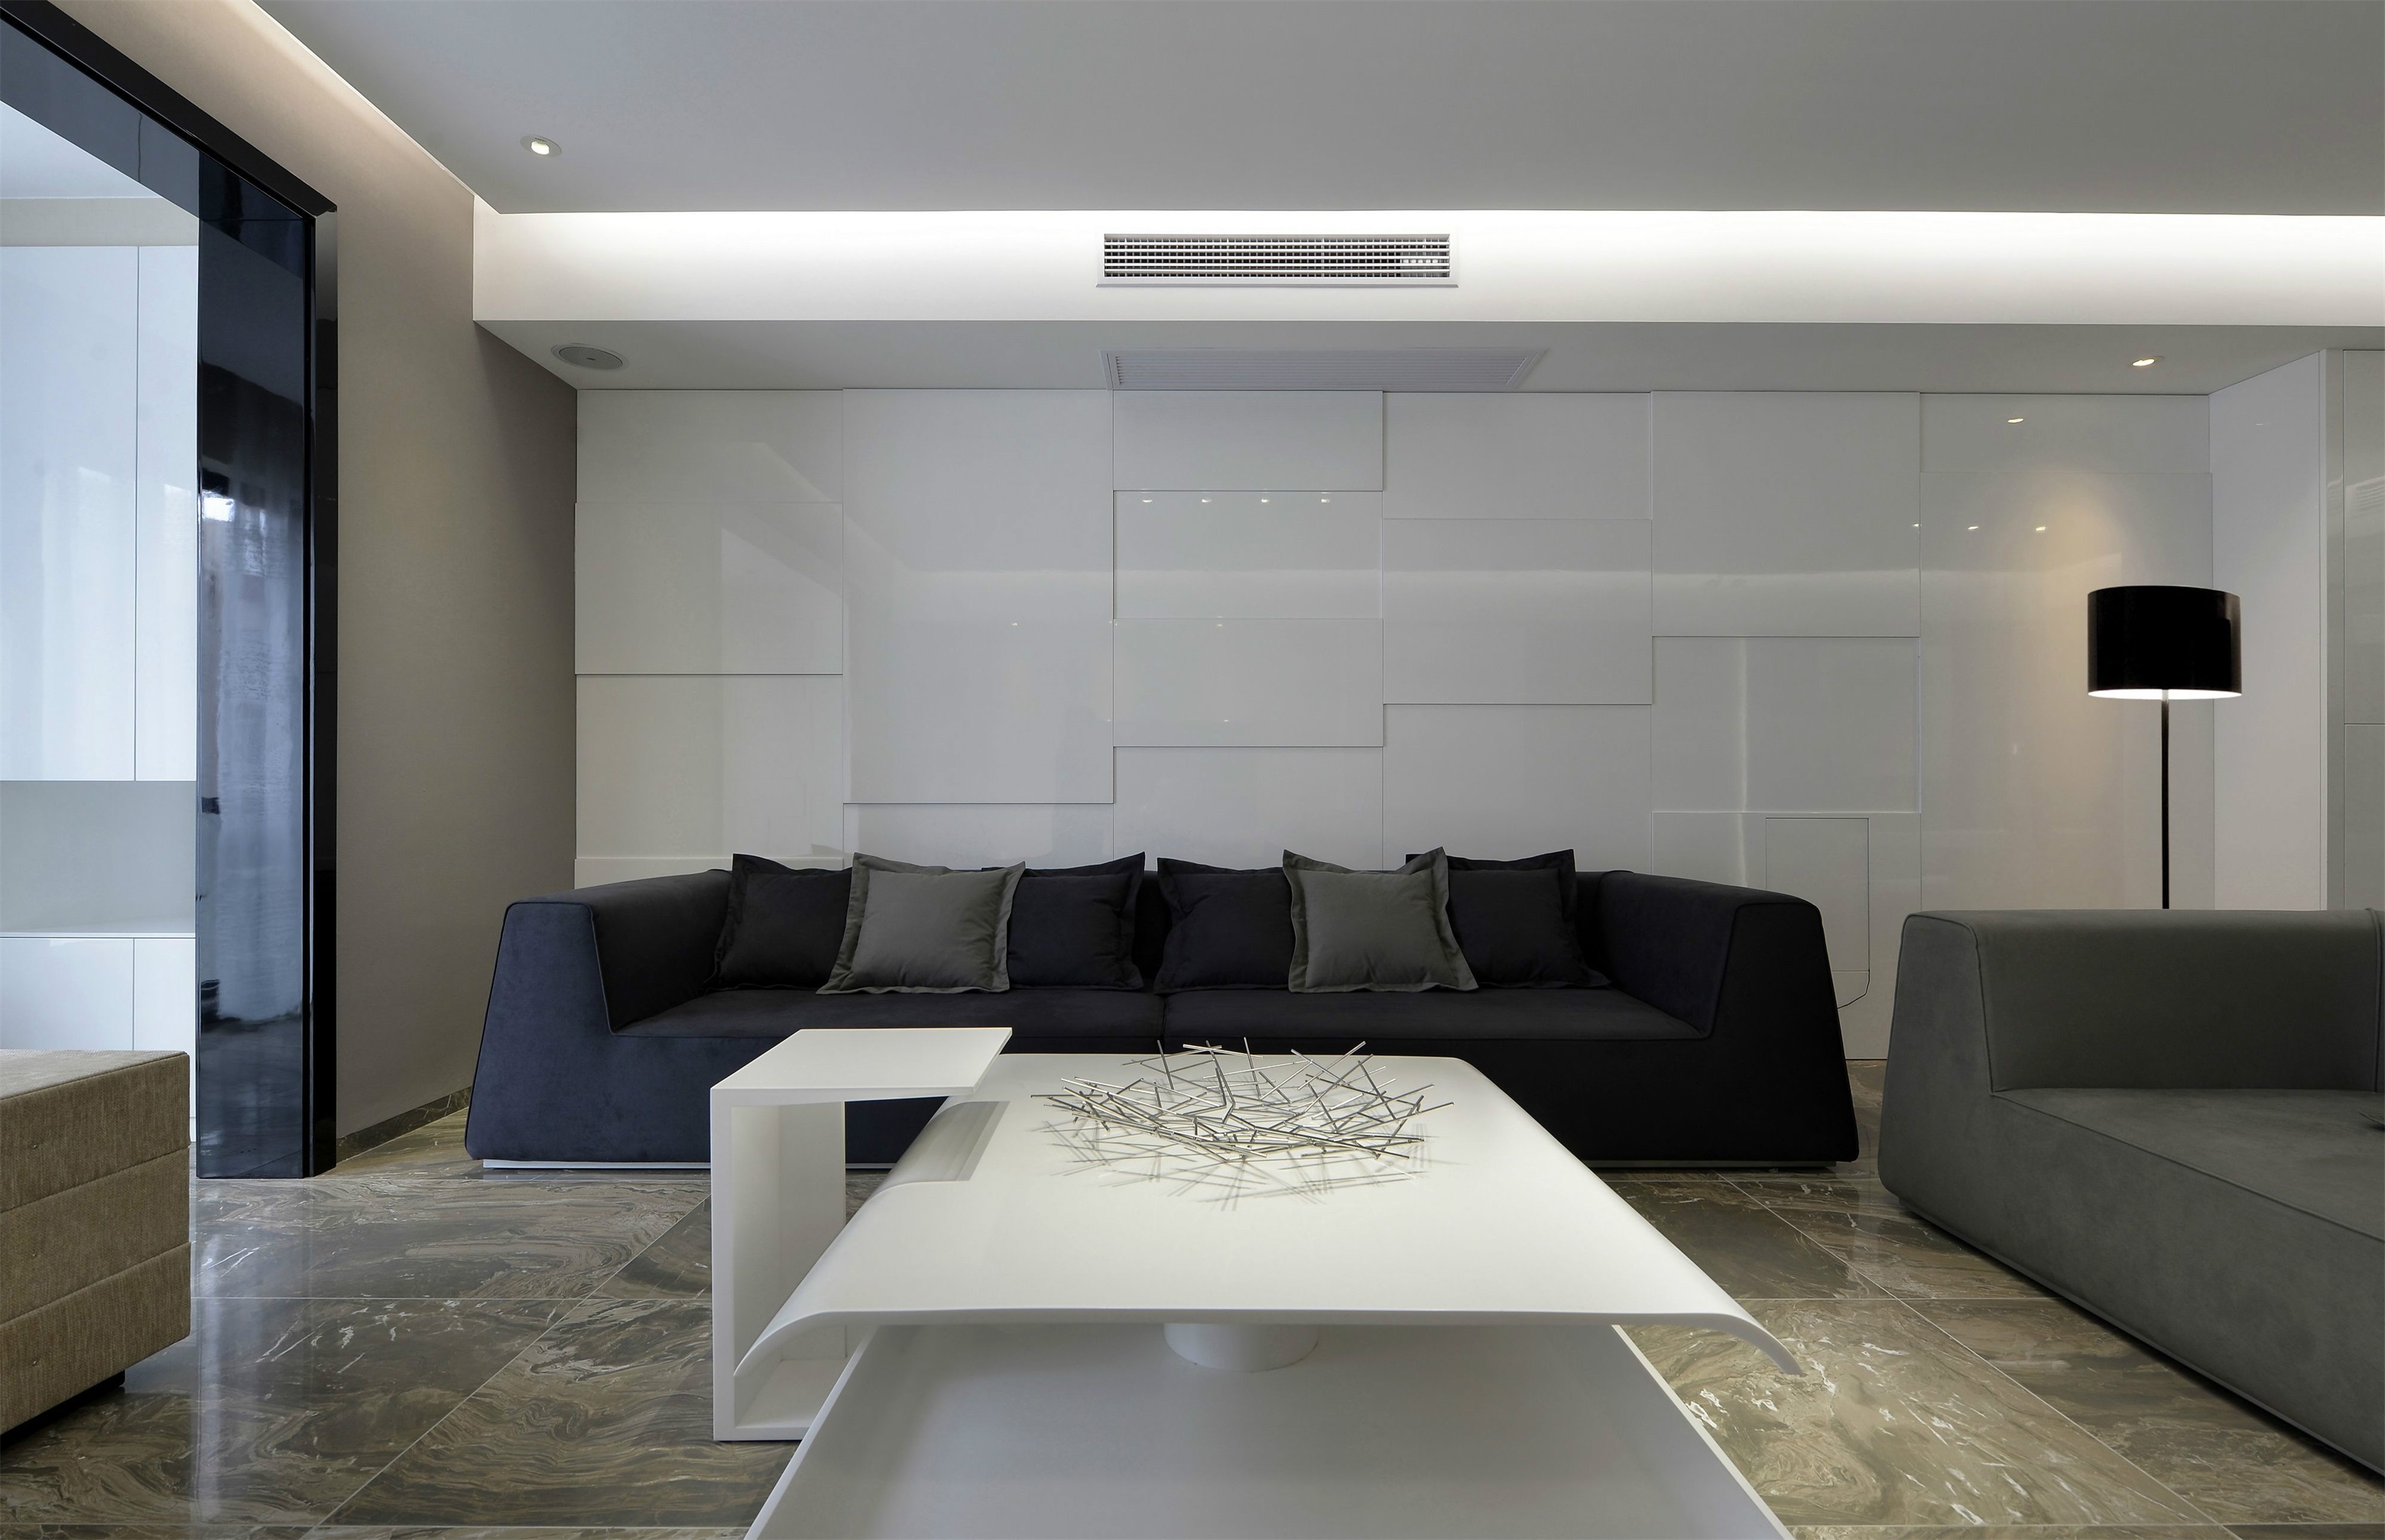 客厅背景墙层次分明,与茶几相互呼应,中部冷色调沙发设计简洁,形成